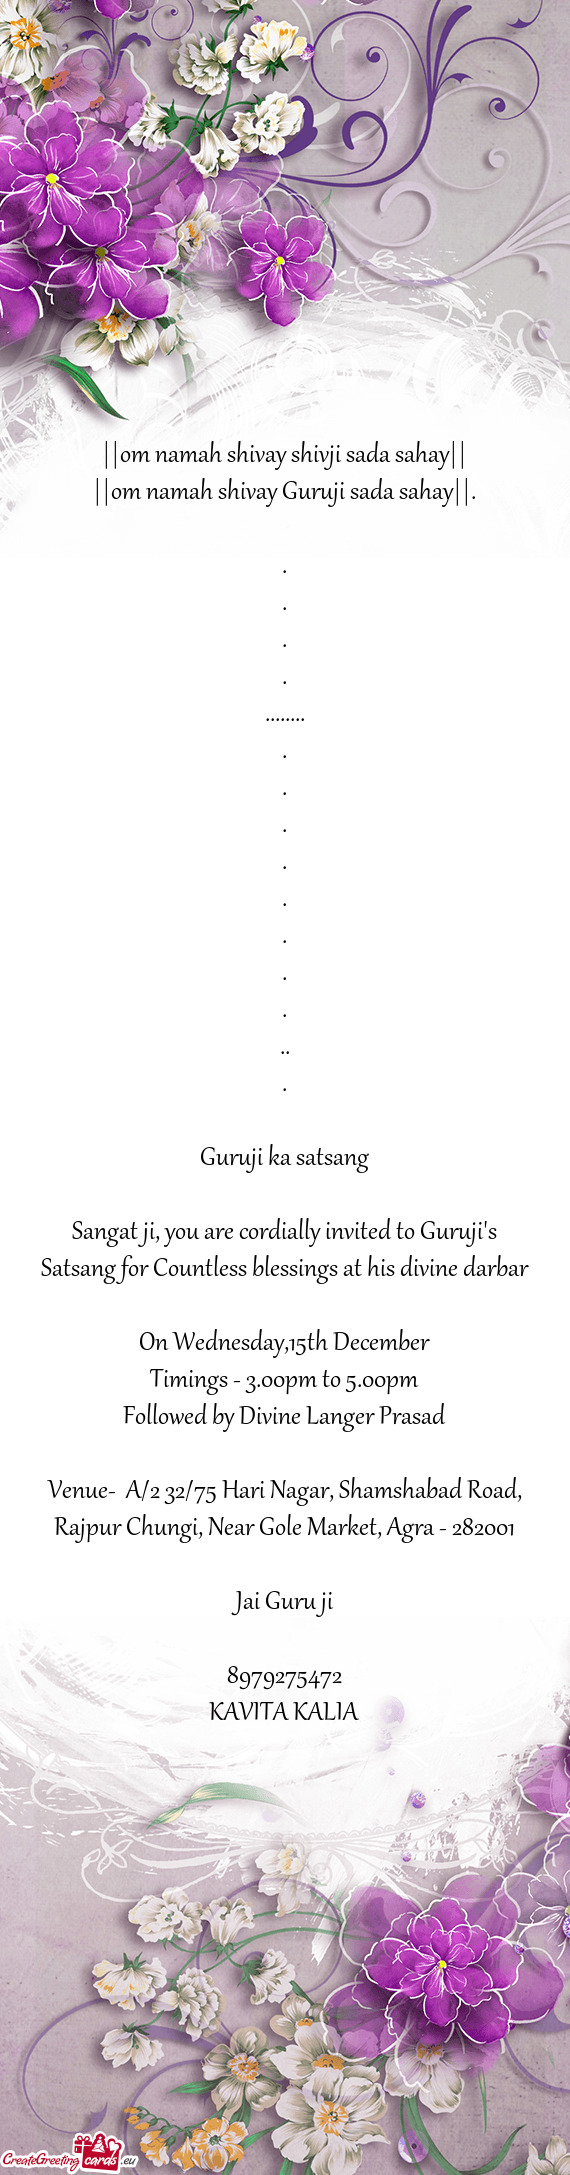 Sangat ji, you are cordially invited to Guruji